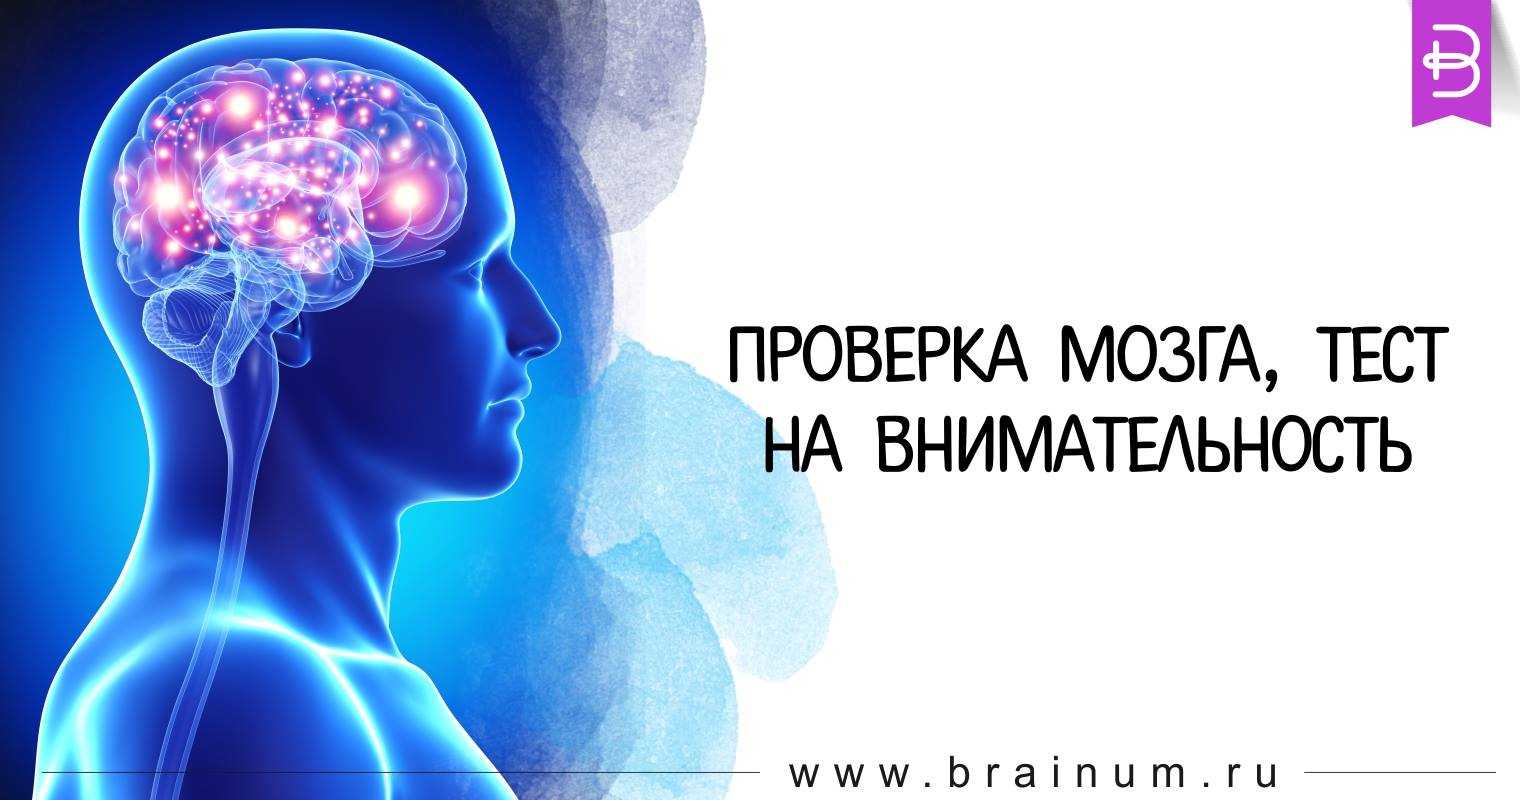 Тест для мозга и памяти